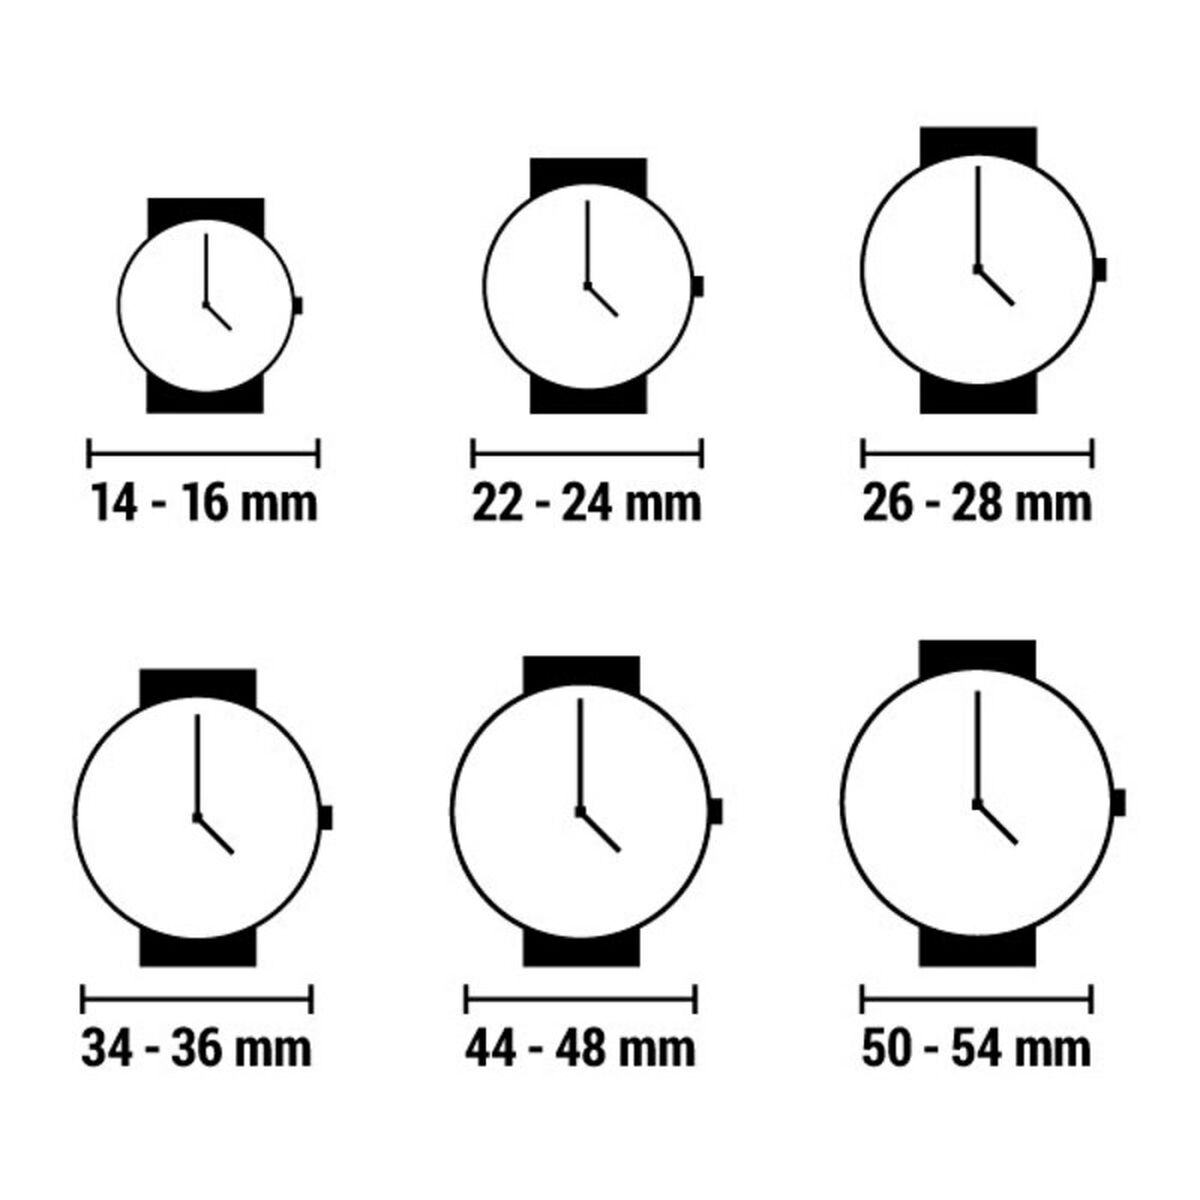 Horloge Dames Glam Rock gr32018-bb (Ø 44 mm)